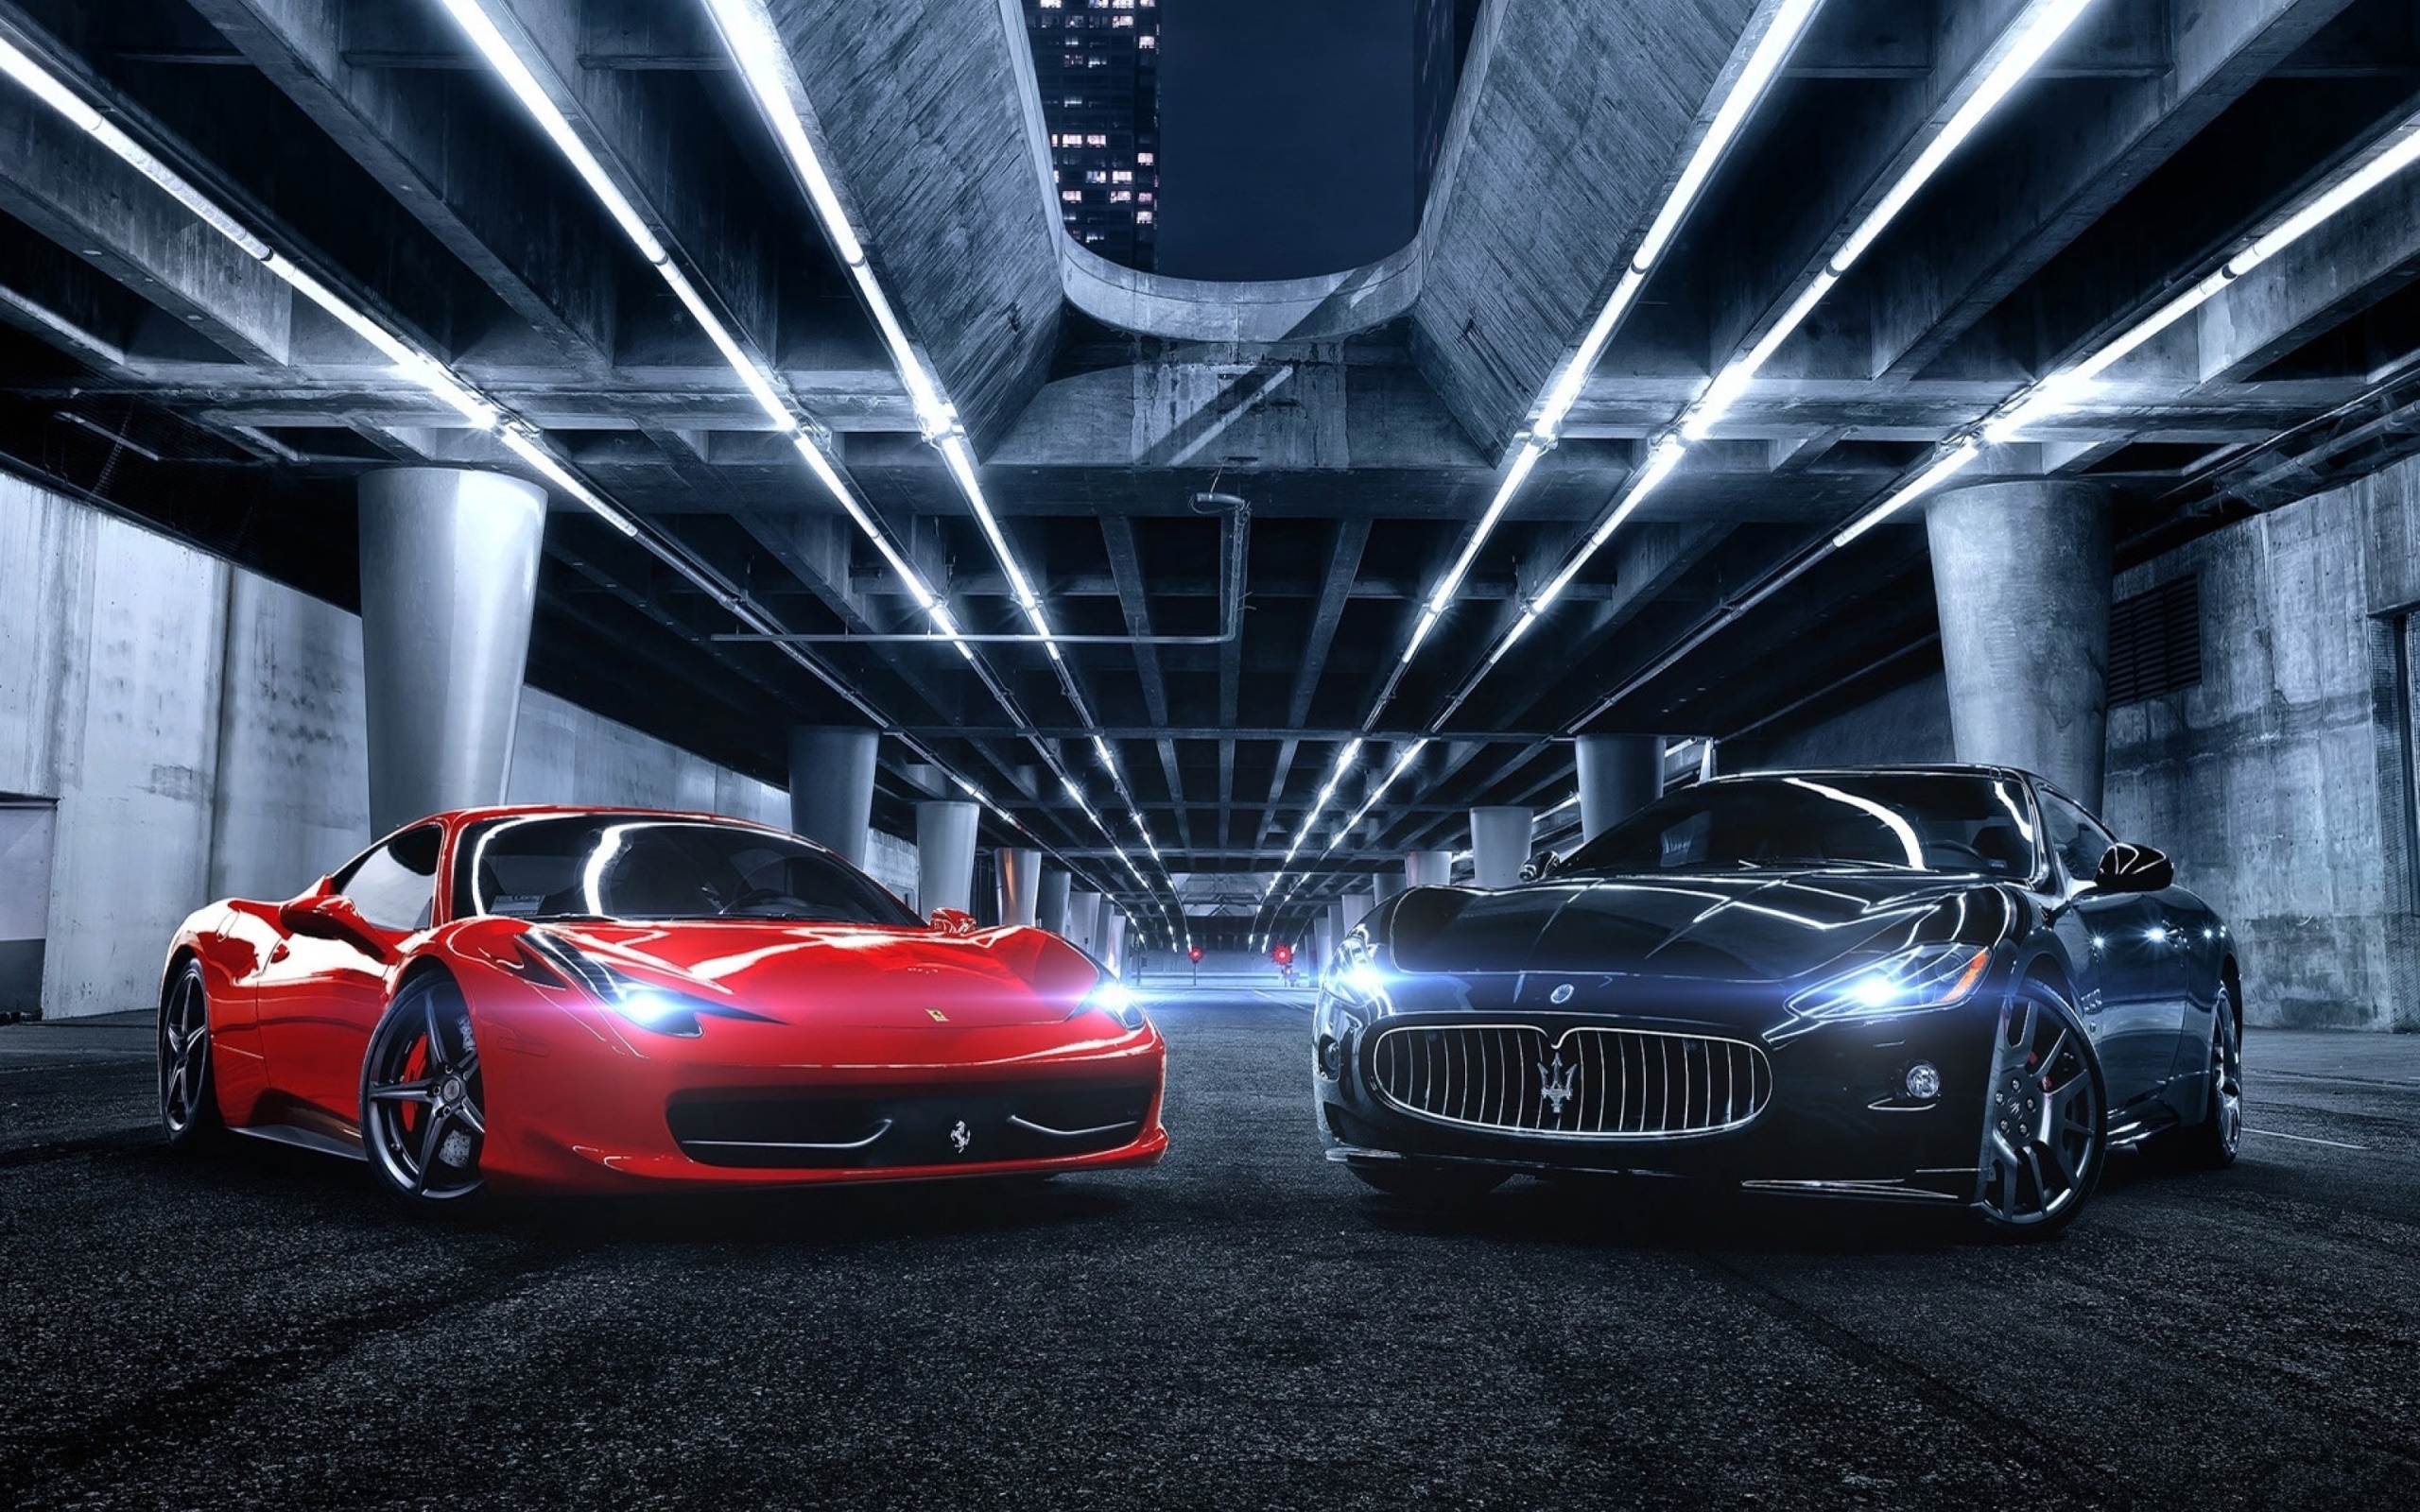 Обои Ferrari compare Maserati 2560x1600